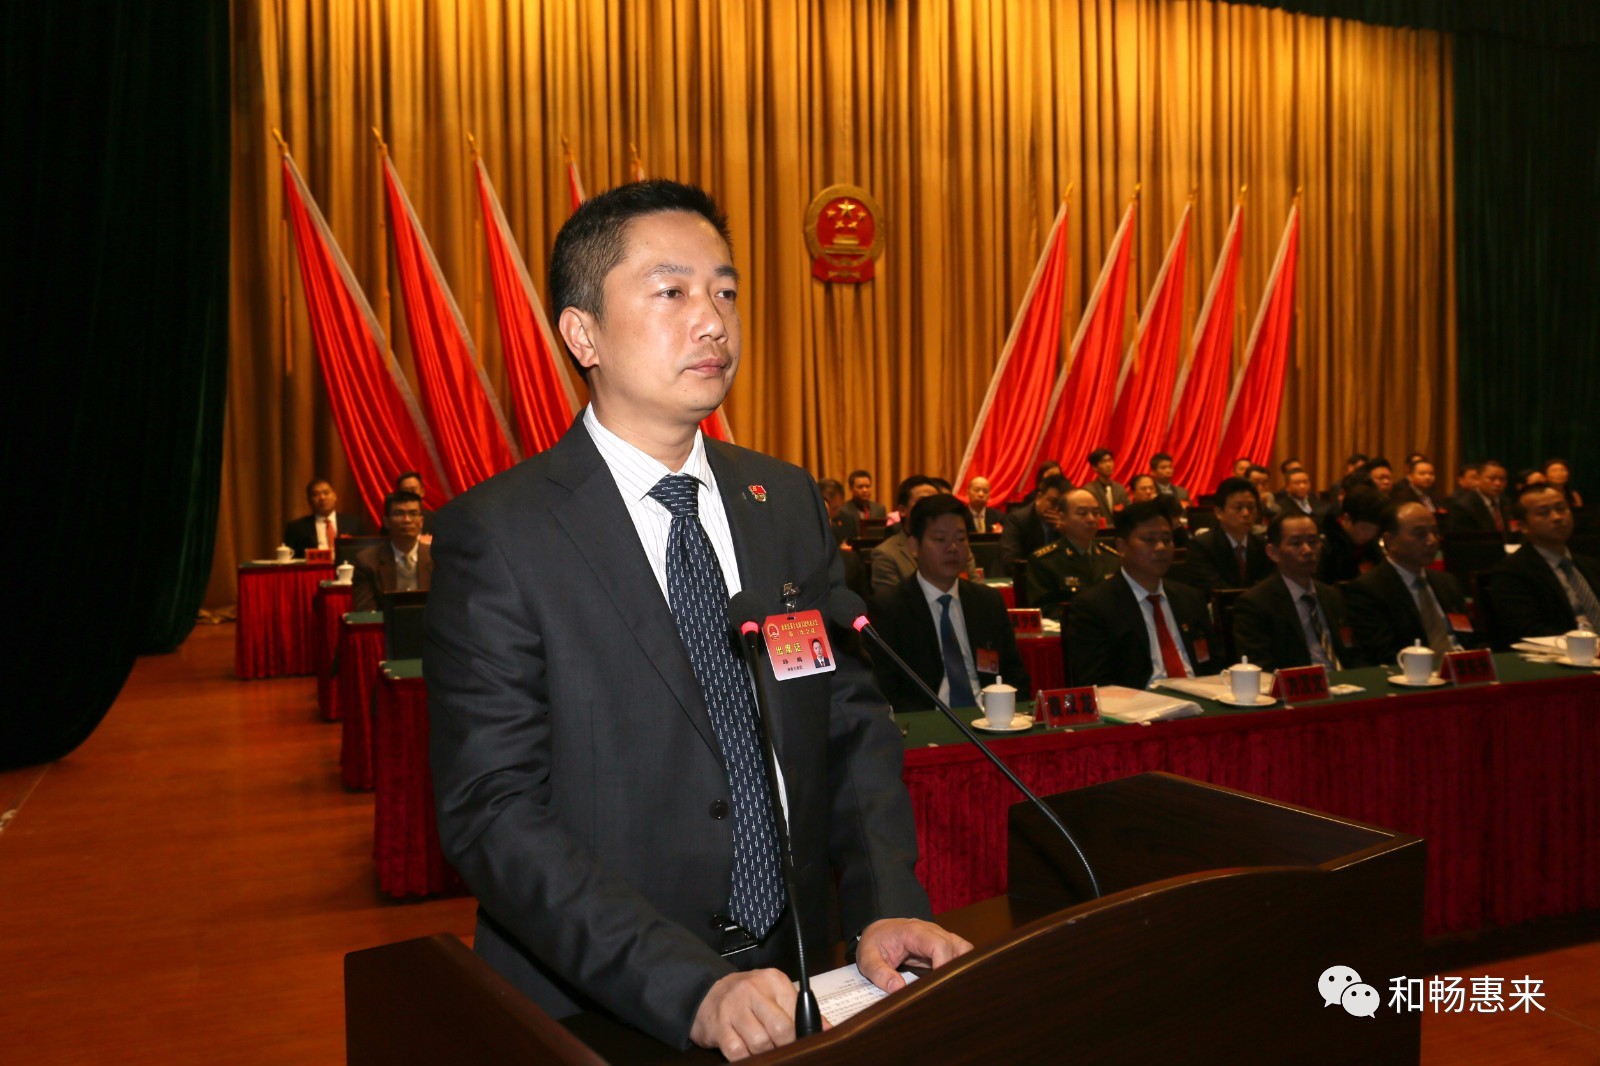 县长邱鹏1月10日,惠来县十五届人民代表大会三次会议经过全体代表的